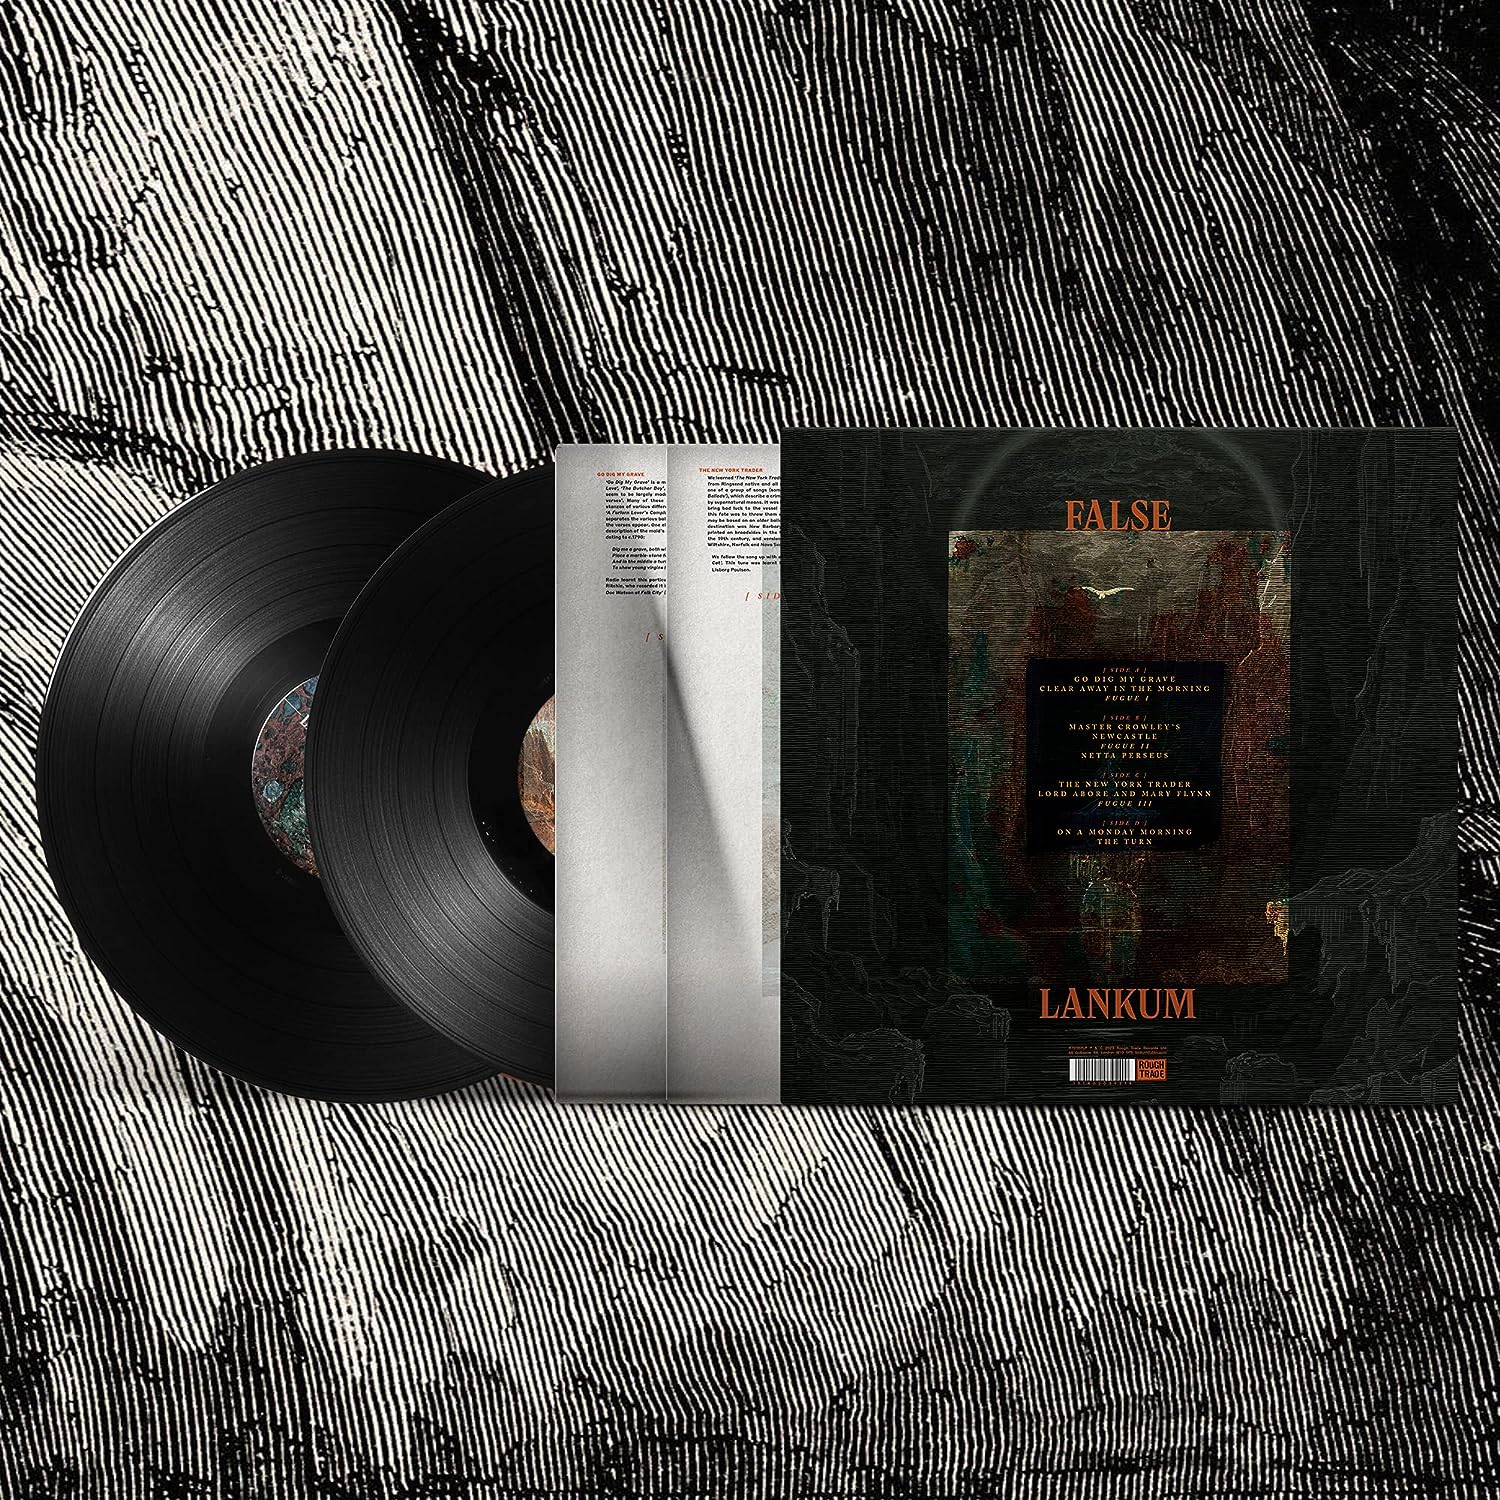 Lankum - False Lankum: Vinyl 2LP